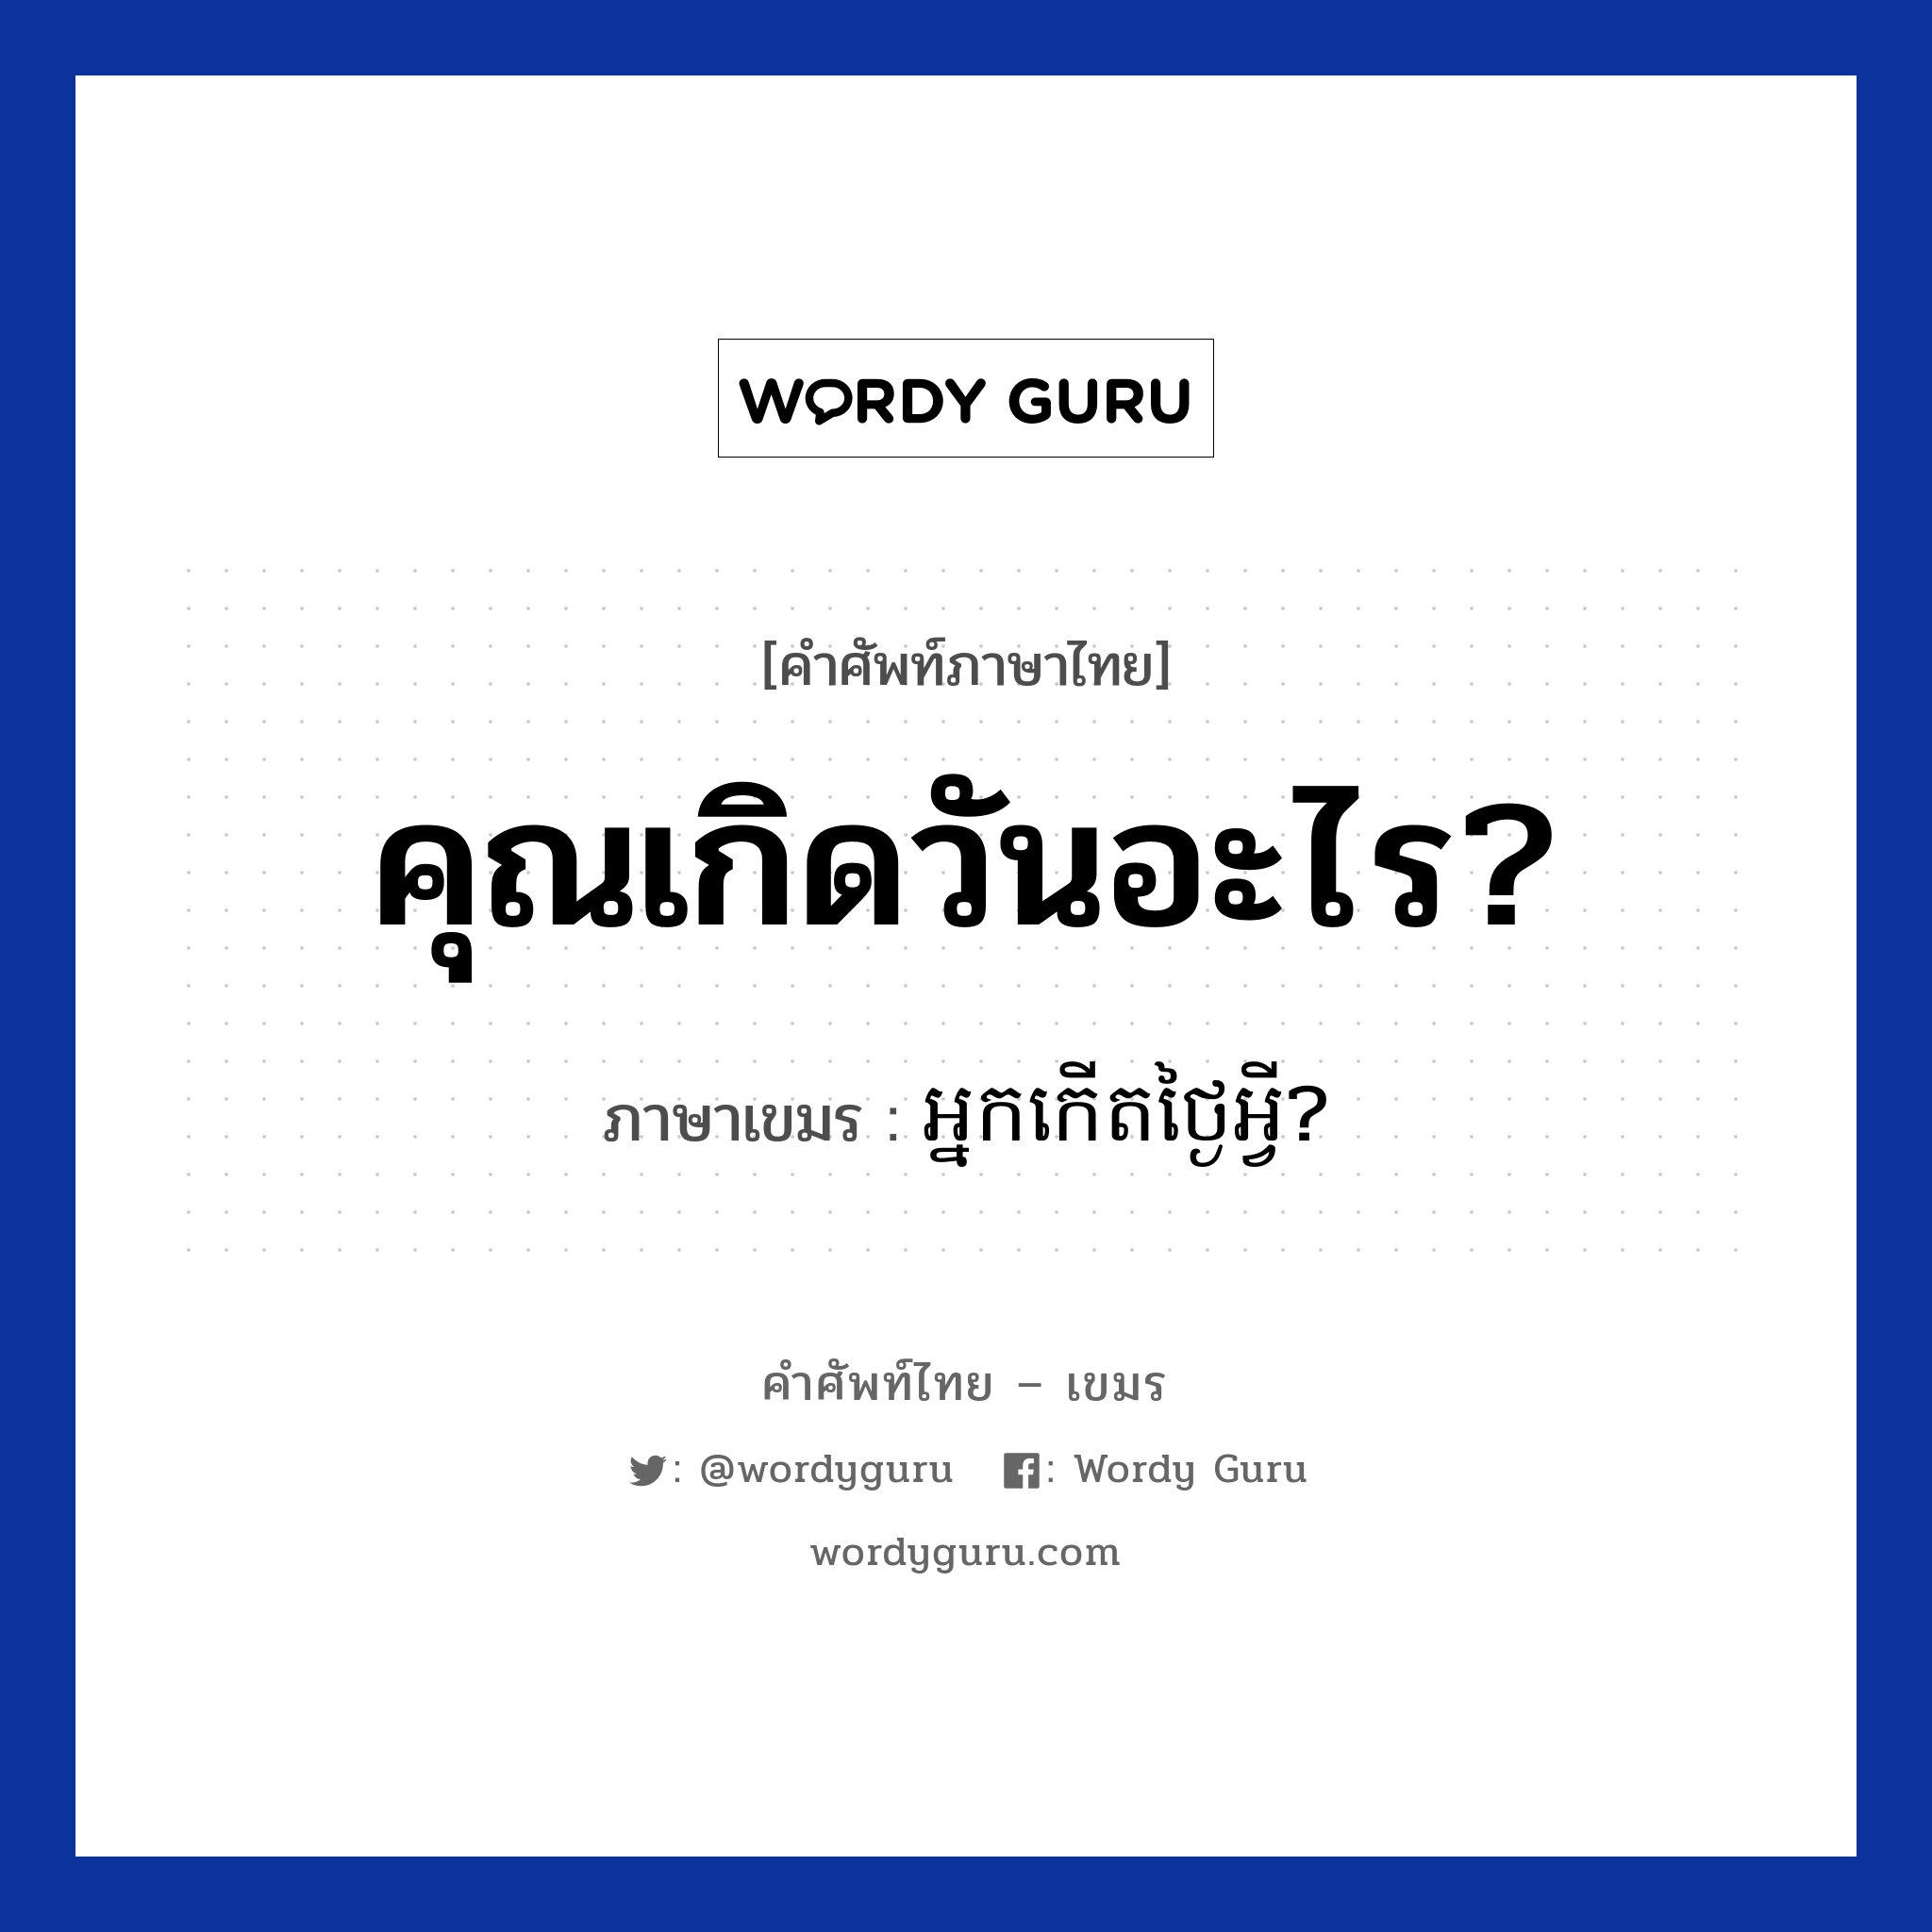 คุณเกิดวันอะไร? ภาษาเขมรคืออะไร, คำศัพท์ภาษาไทย - เขมร คุณเกิดวันอะไร? ภาษาเขมร អ្នកកេីតថ្ងៃអ្វី? หมวด บทสนทนาเกี่ยวกับวัน เวลา Neak kert tngai avey? หมวด บทสนทนาเกี่ยวกับวัน เวลา